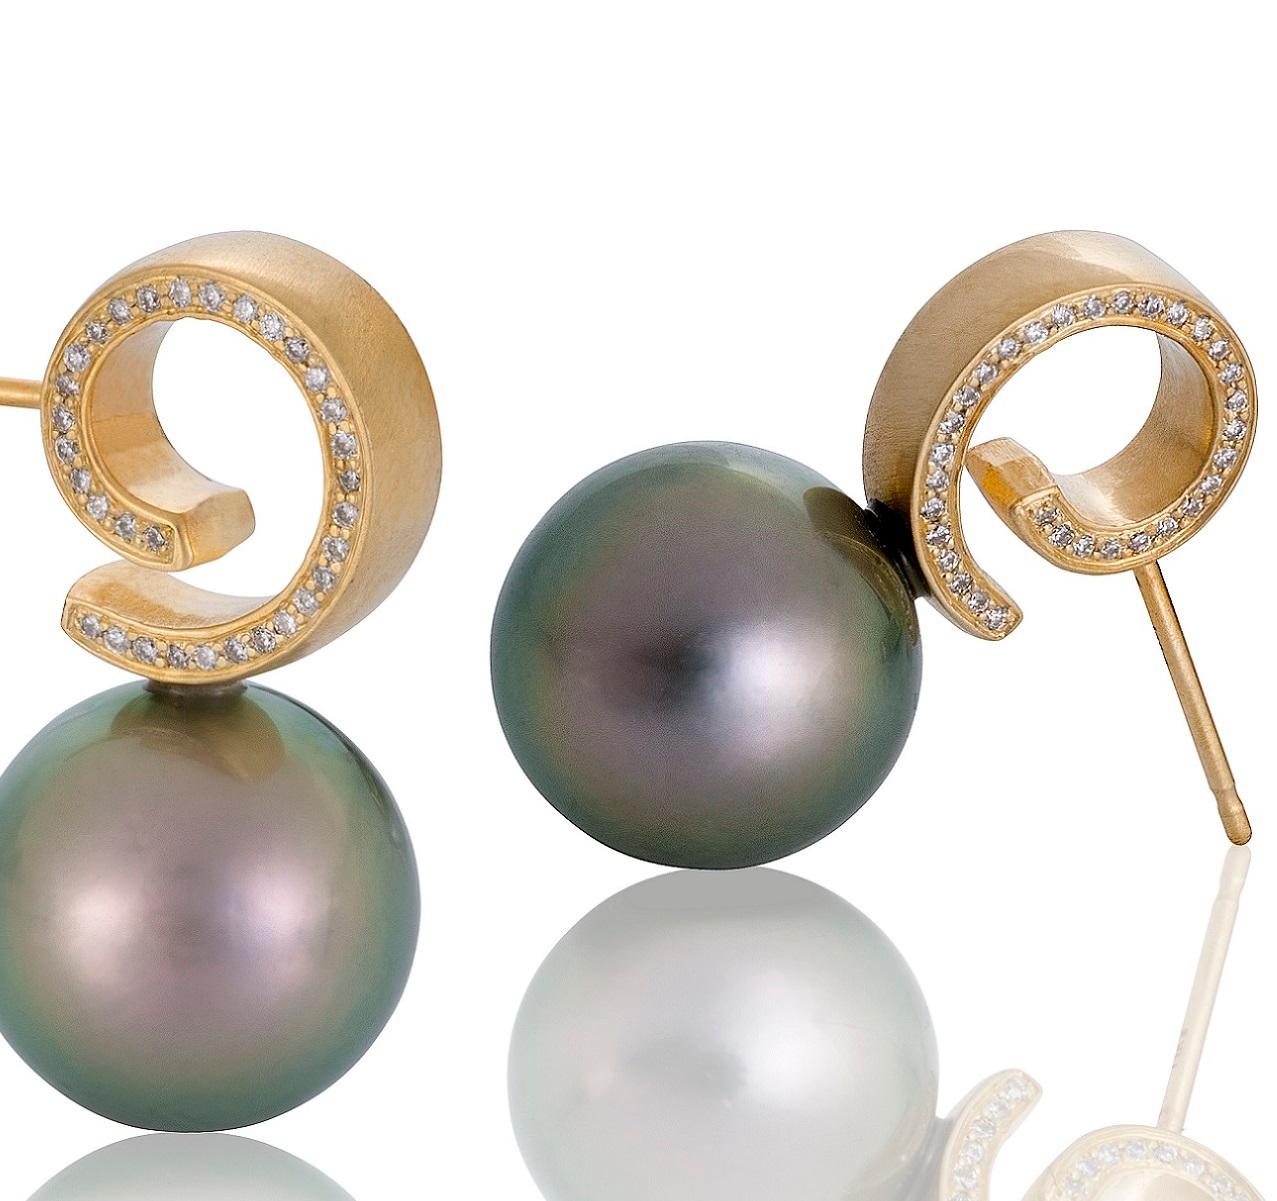 Für die Perlenliebhaberin da draußen - dieses Paar Cirrus Tahiti-Perlen-Ohrringe wird Sie zum Schwärmen bringen. Die Perlen sind jeweils über 11 mm groß und haben die wunderschönen schillernden Grün-, Rosa- und Goldtöne, für die die begehrtesten